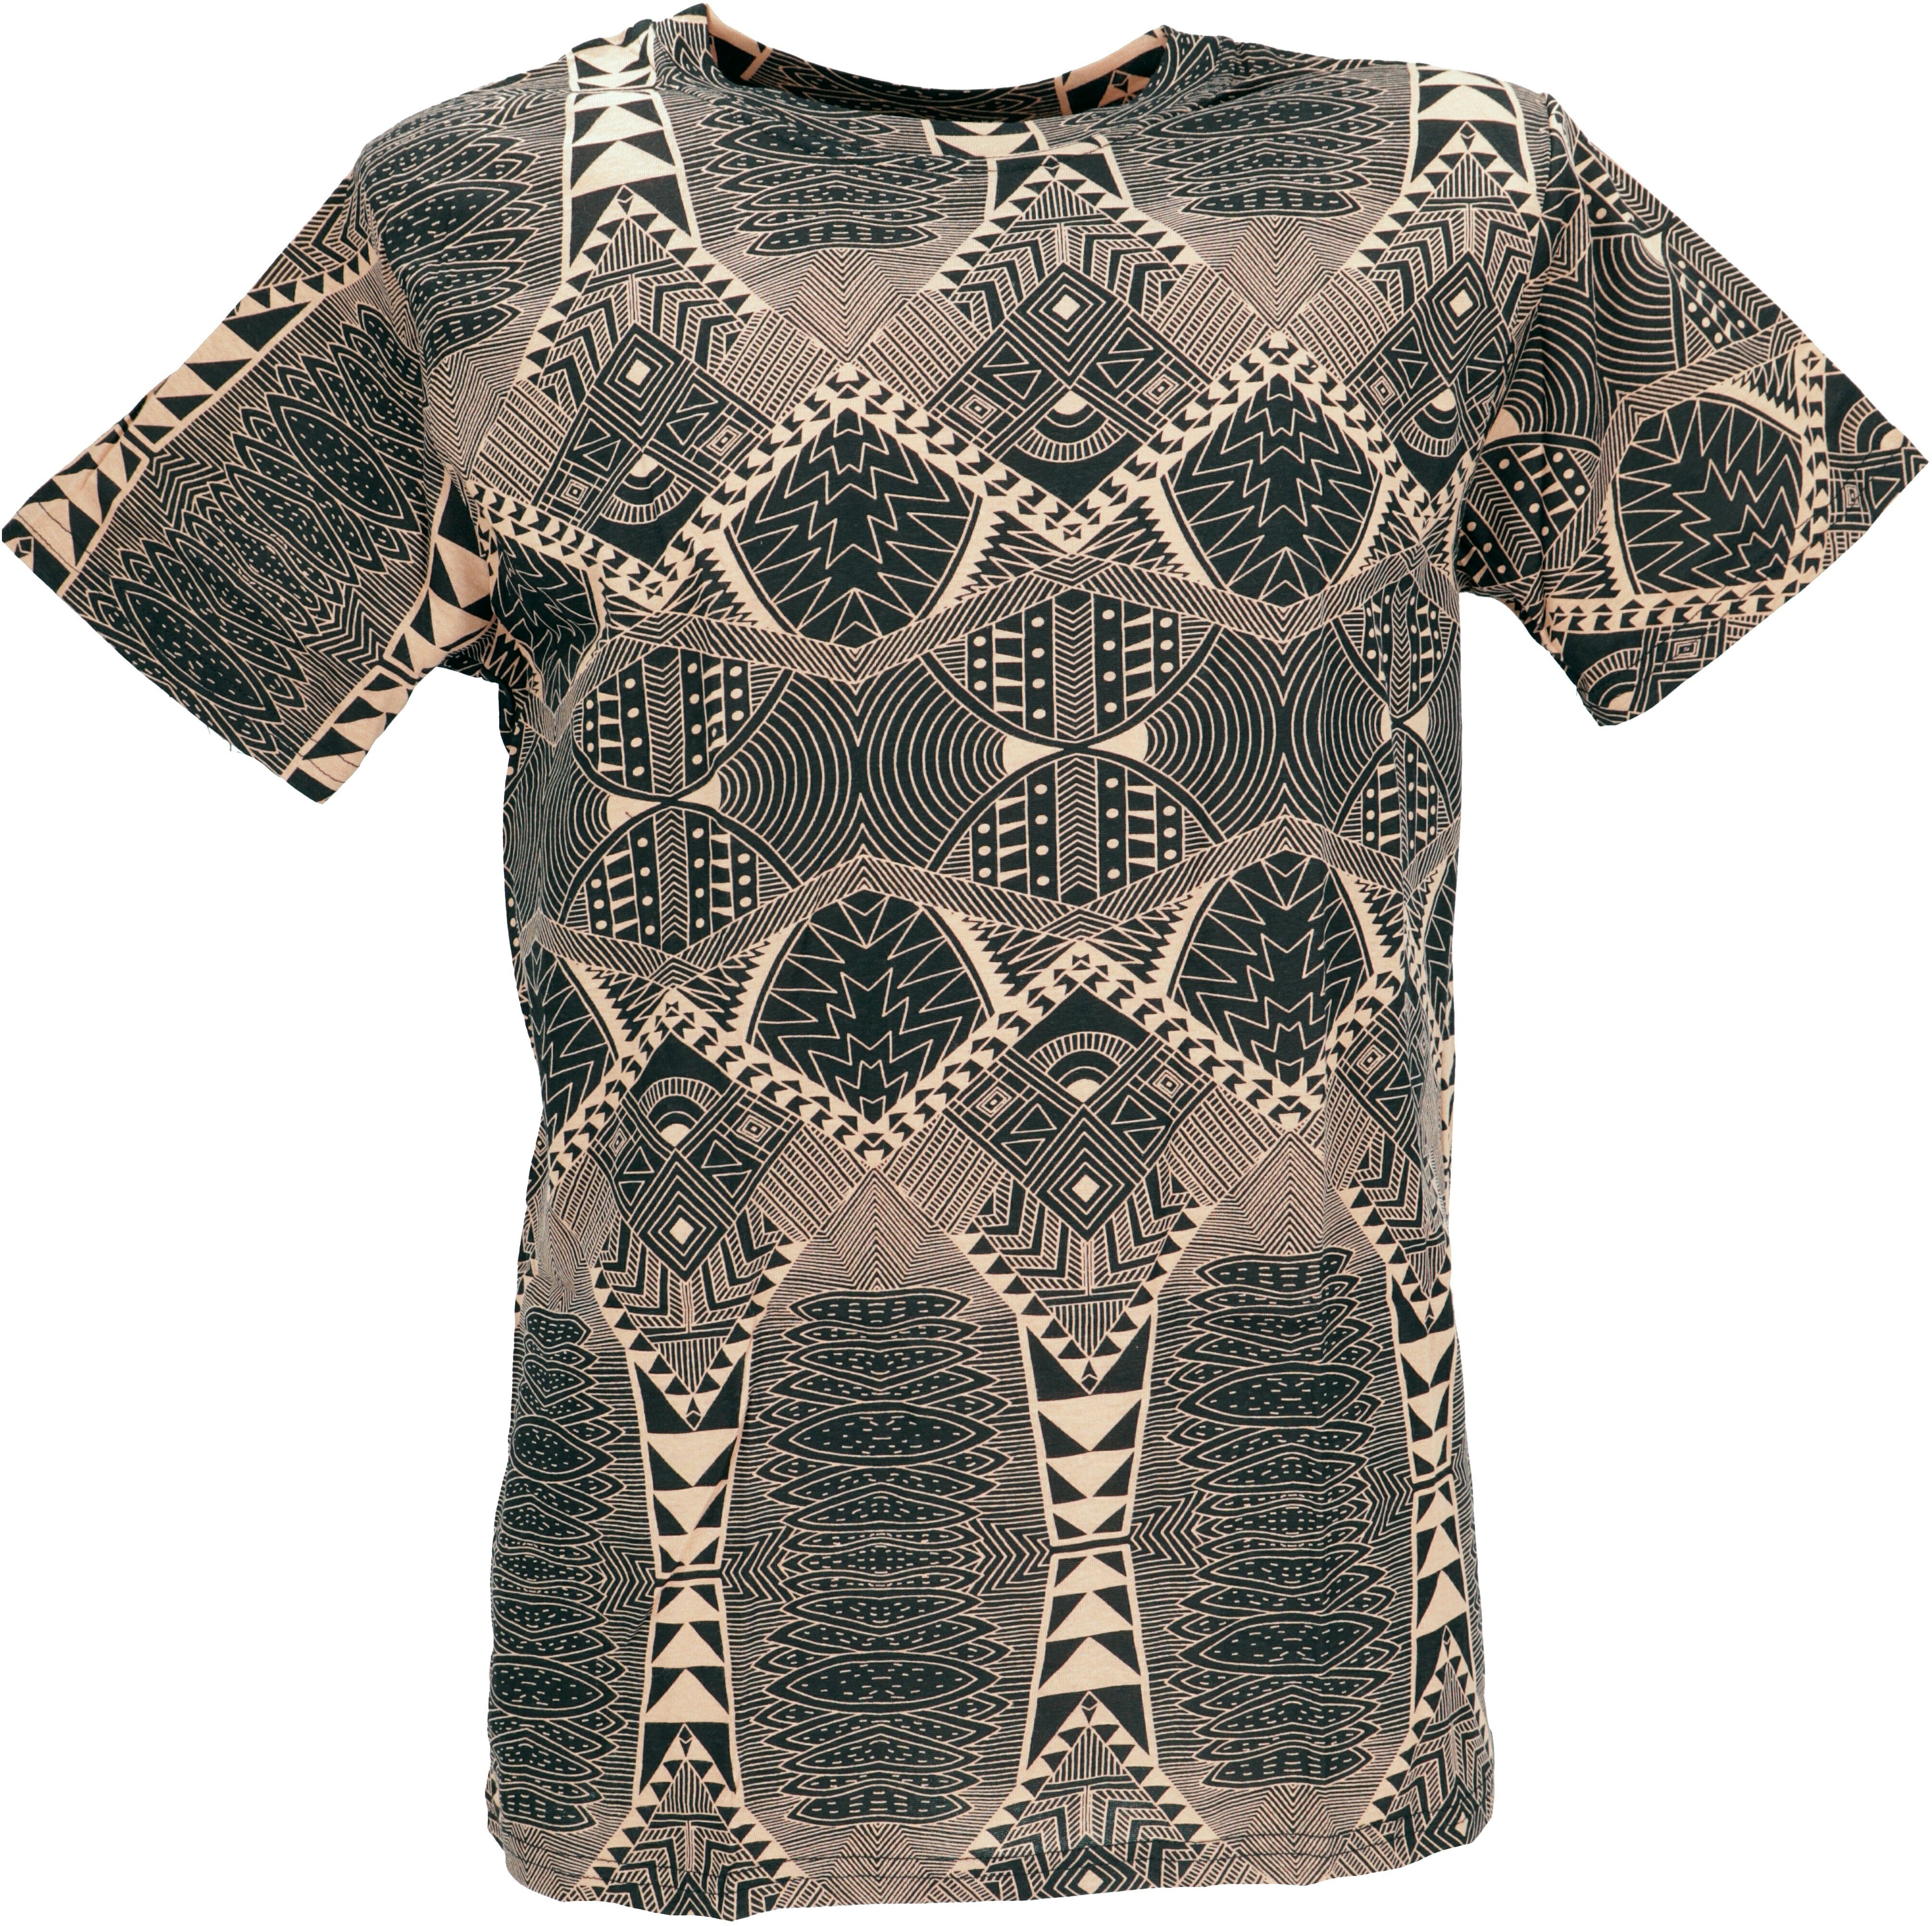 Guru-Shop T-Shirt T-Shirt mit psychodelischem Druck, Goa T-Shirt.. alternative Bekleidung schwarz/braun